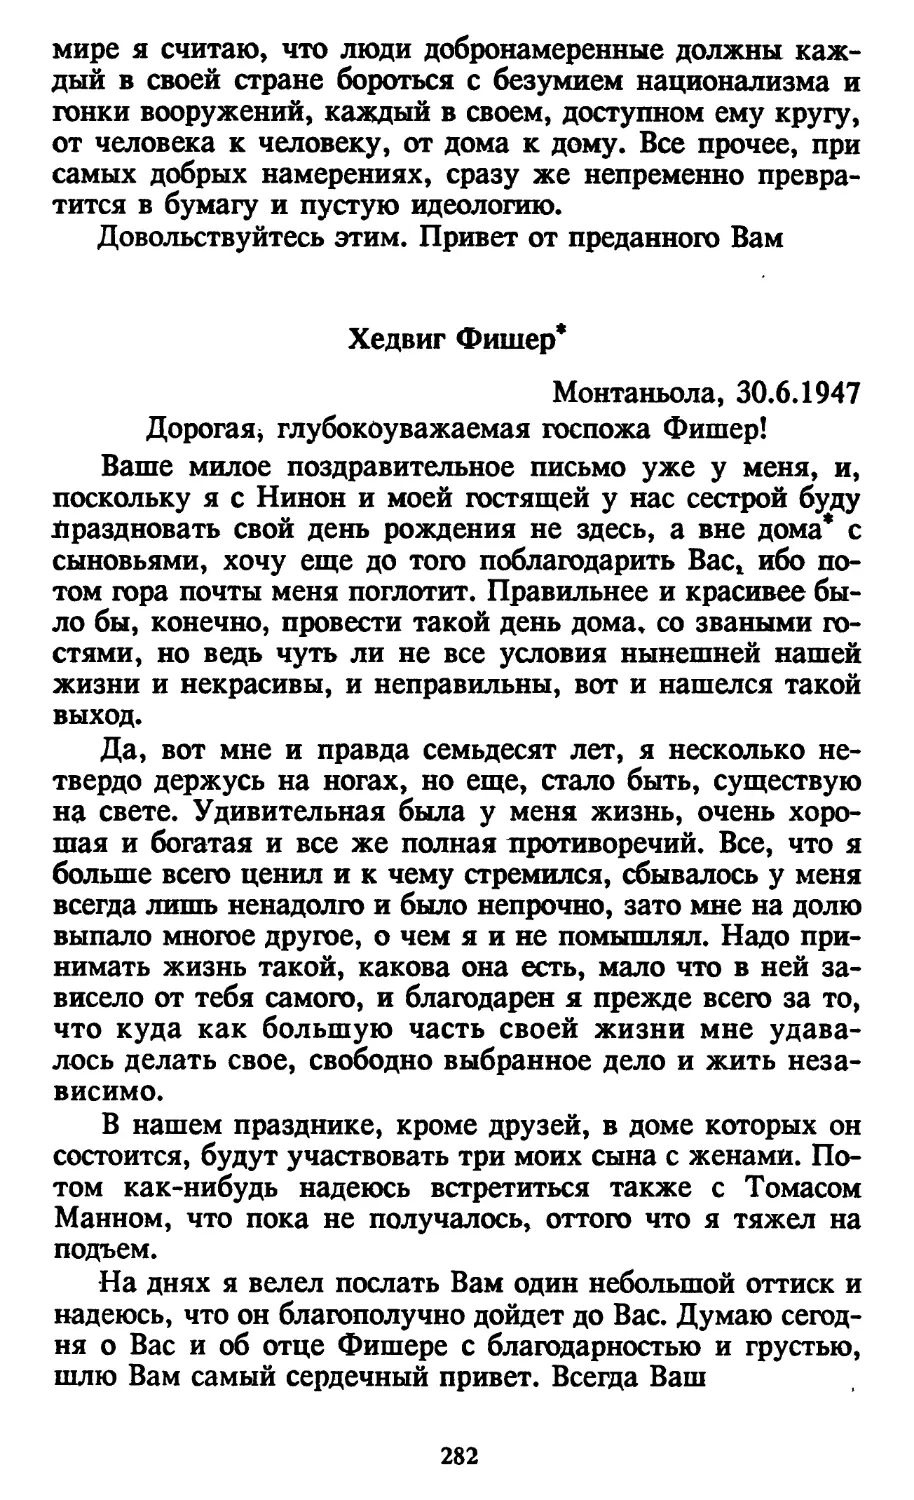 Хедвиг Фишер. 30.6.1947